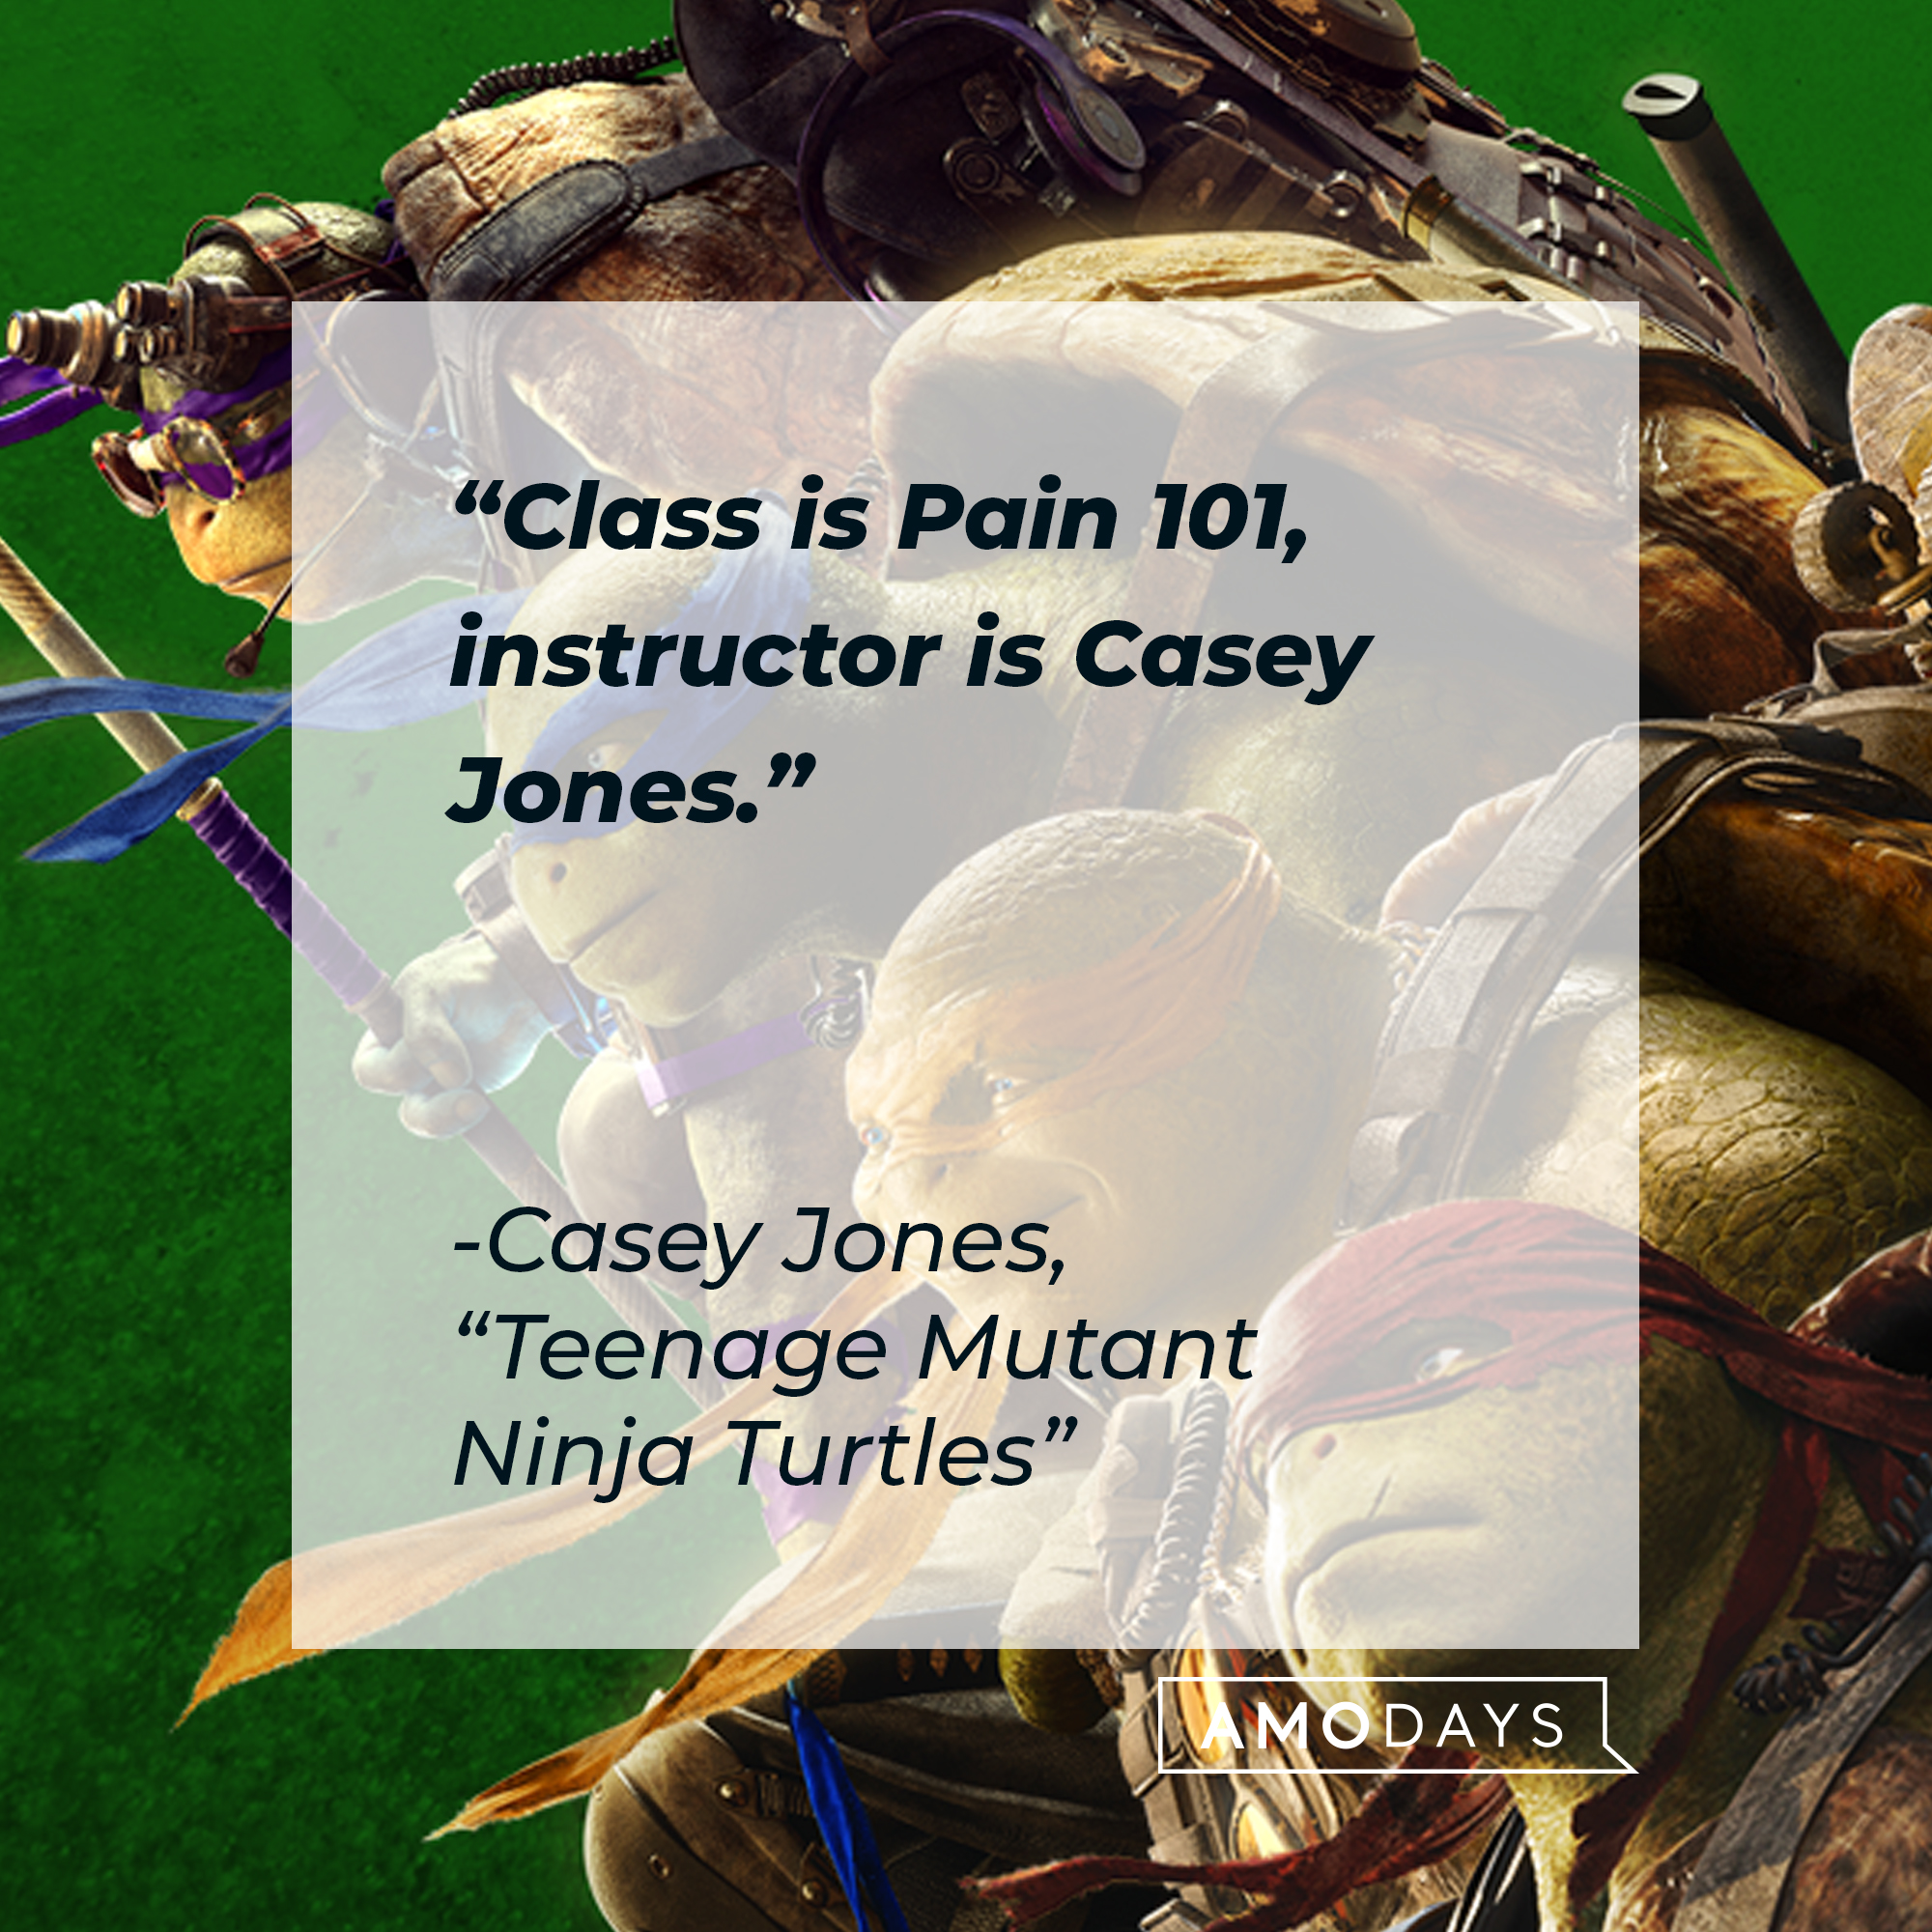 Casey Jones's quote: "Class is Pain 101, instructor is Casey Jones." | Source: facebook.com/TMNT